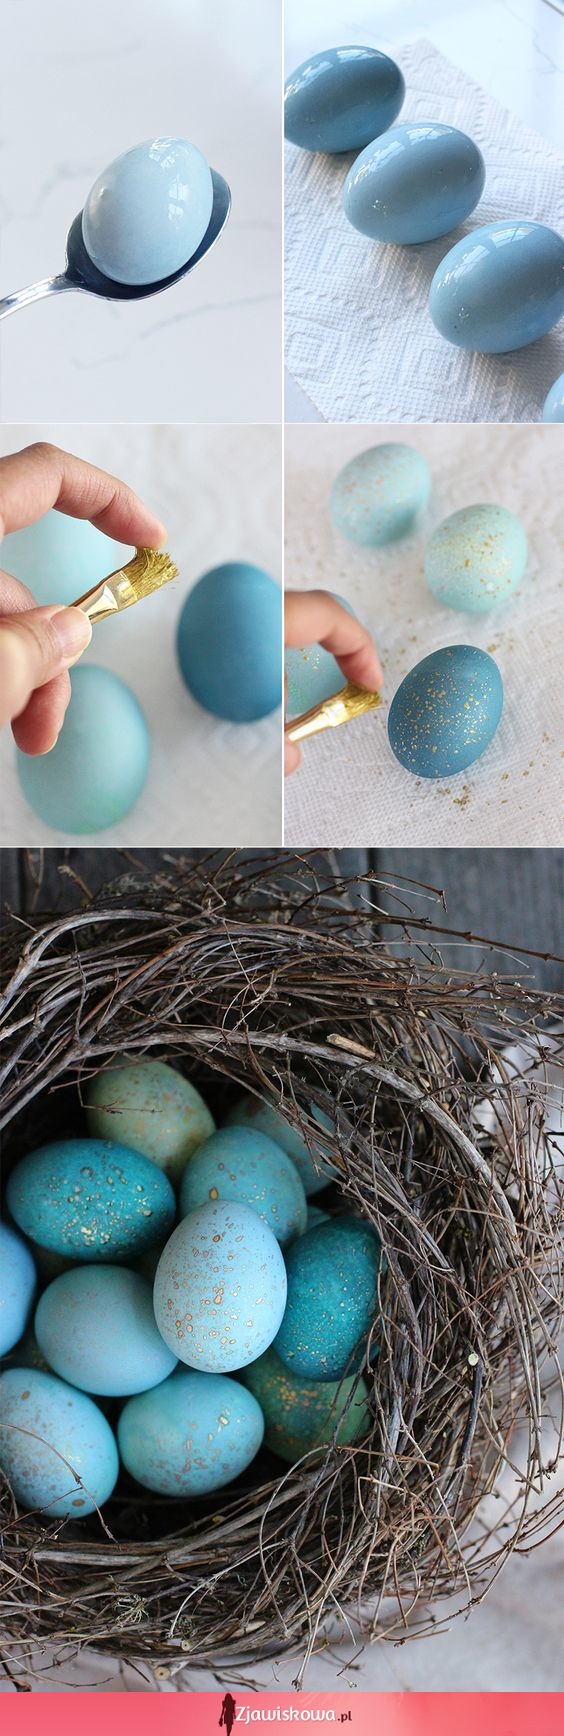 Zobacz jak pięknie ozdobić jaja wielkanocne - łatwy i szybki sposób!